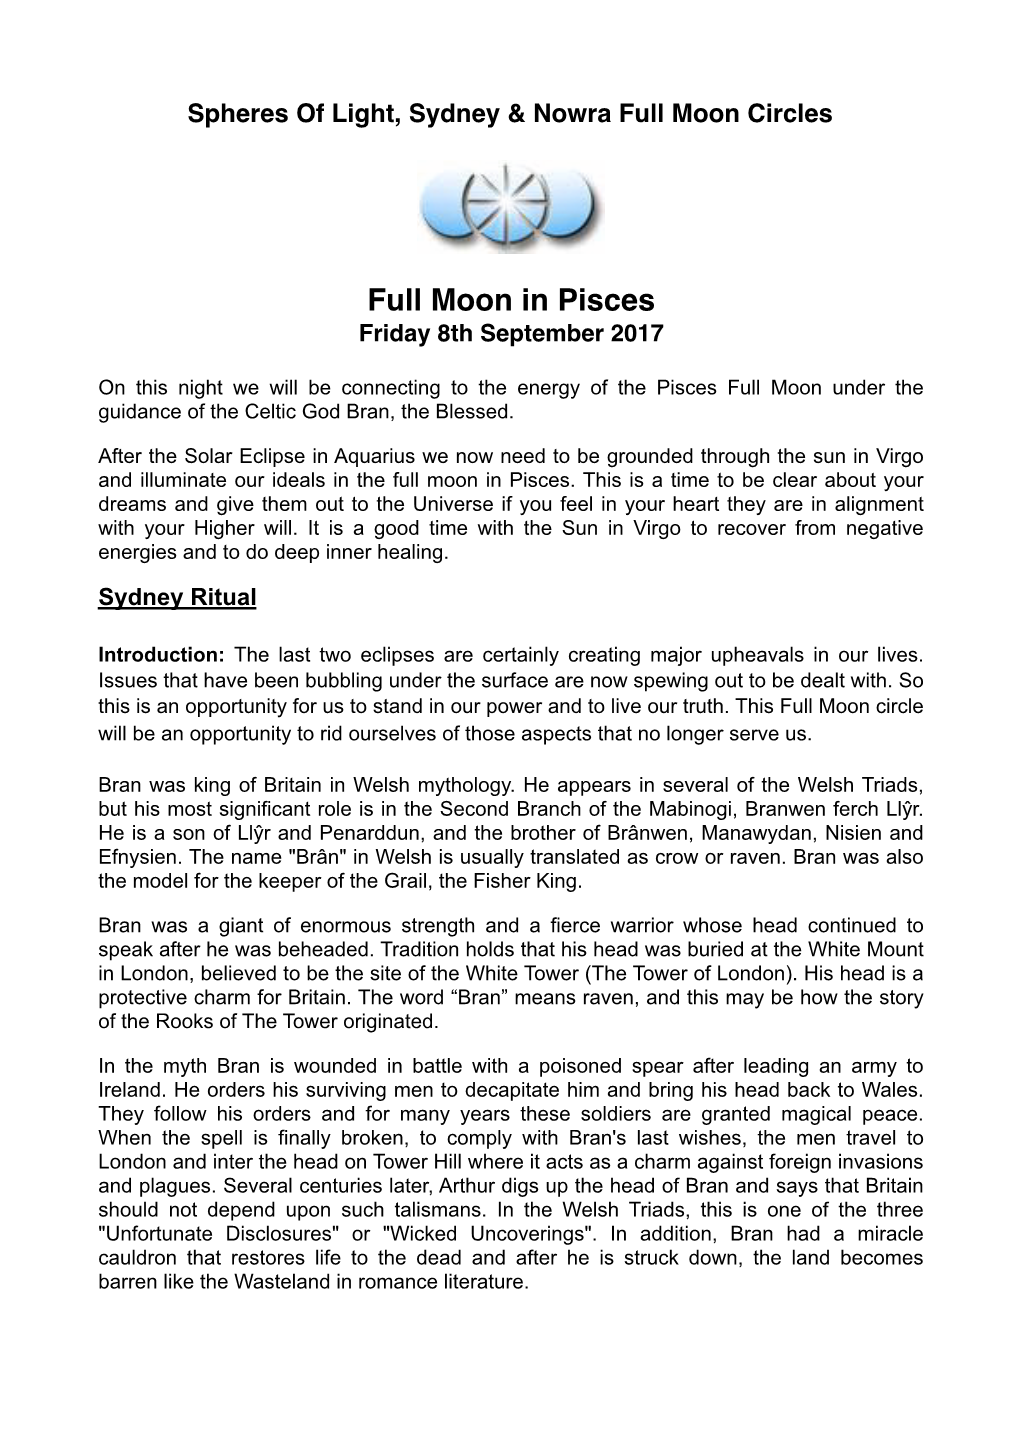 Full Moon in Pisces Friday 8Th September 2017